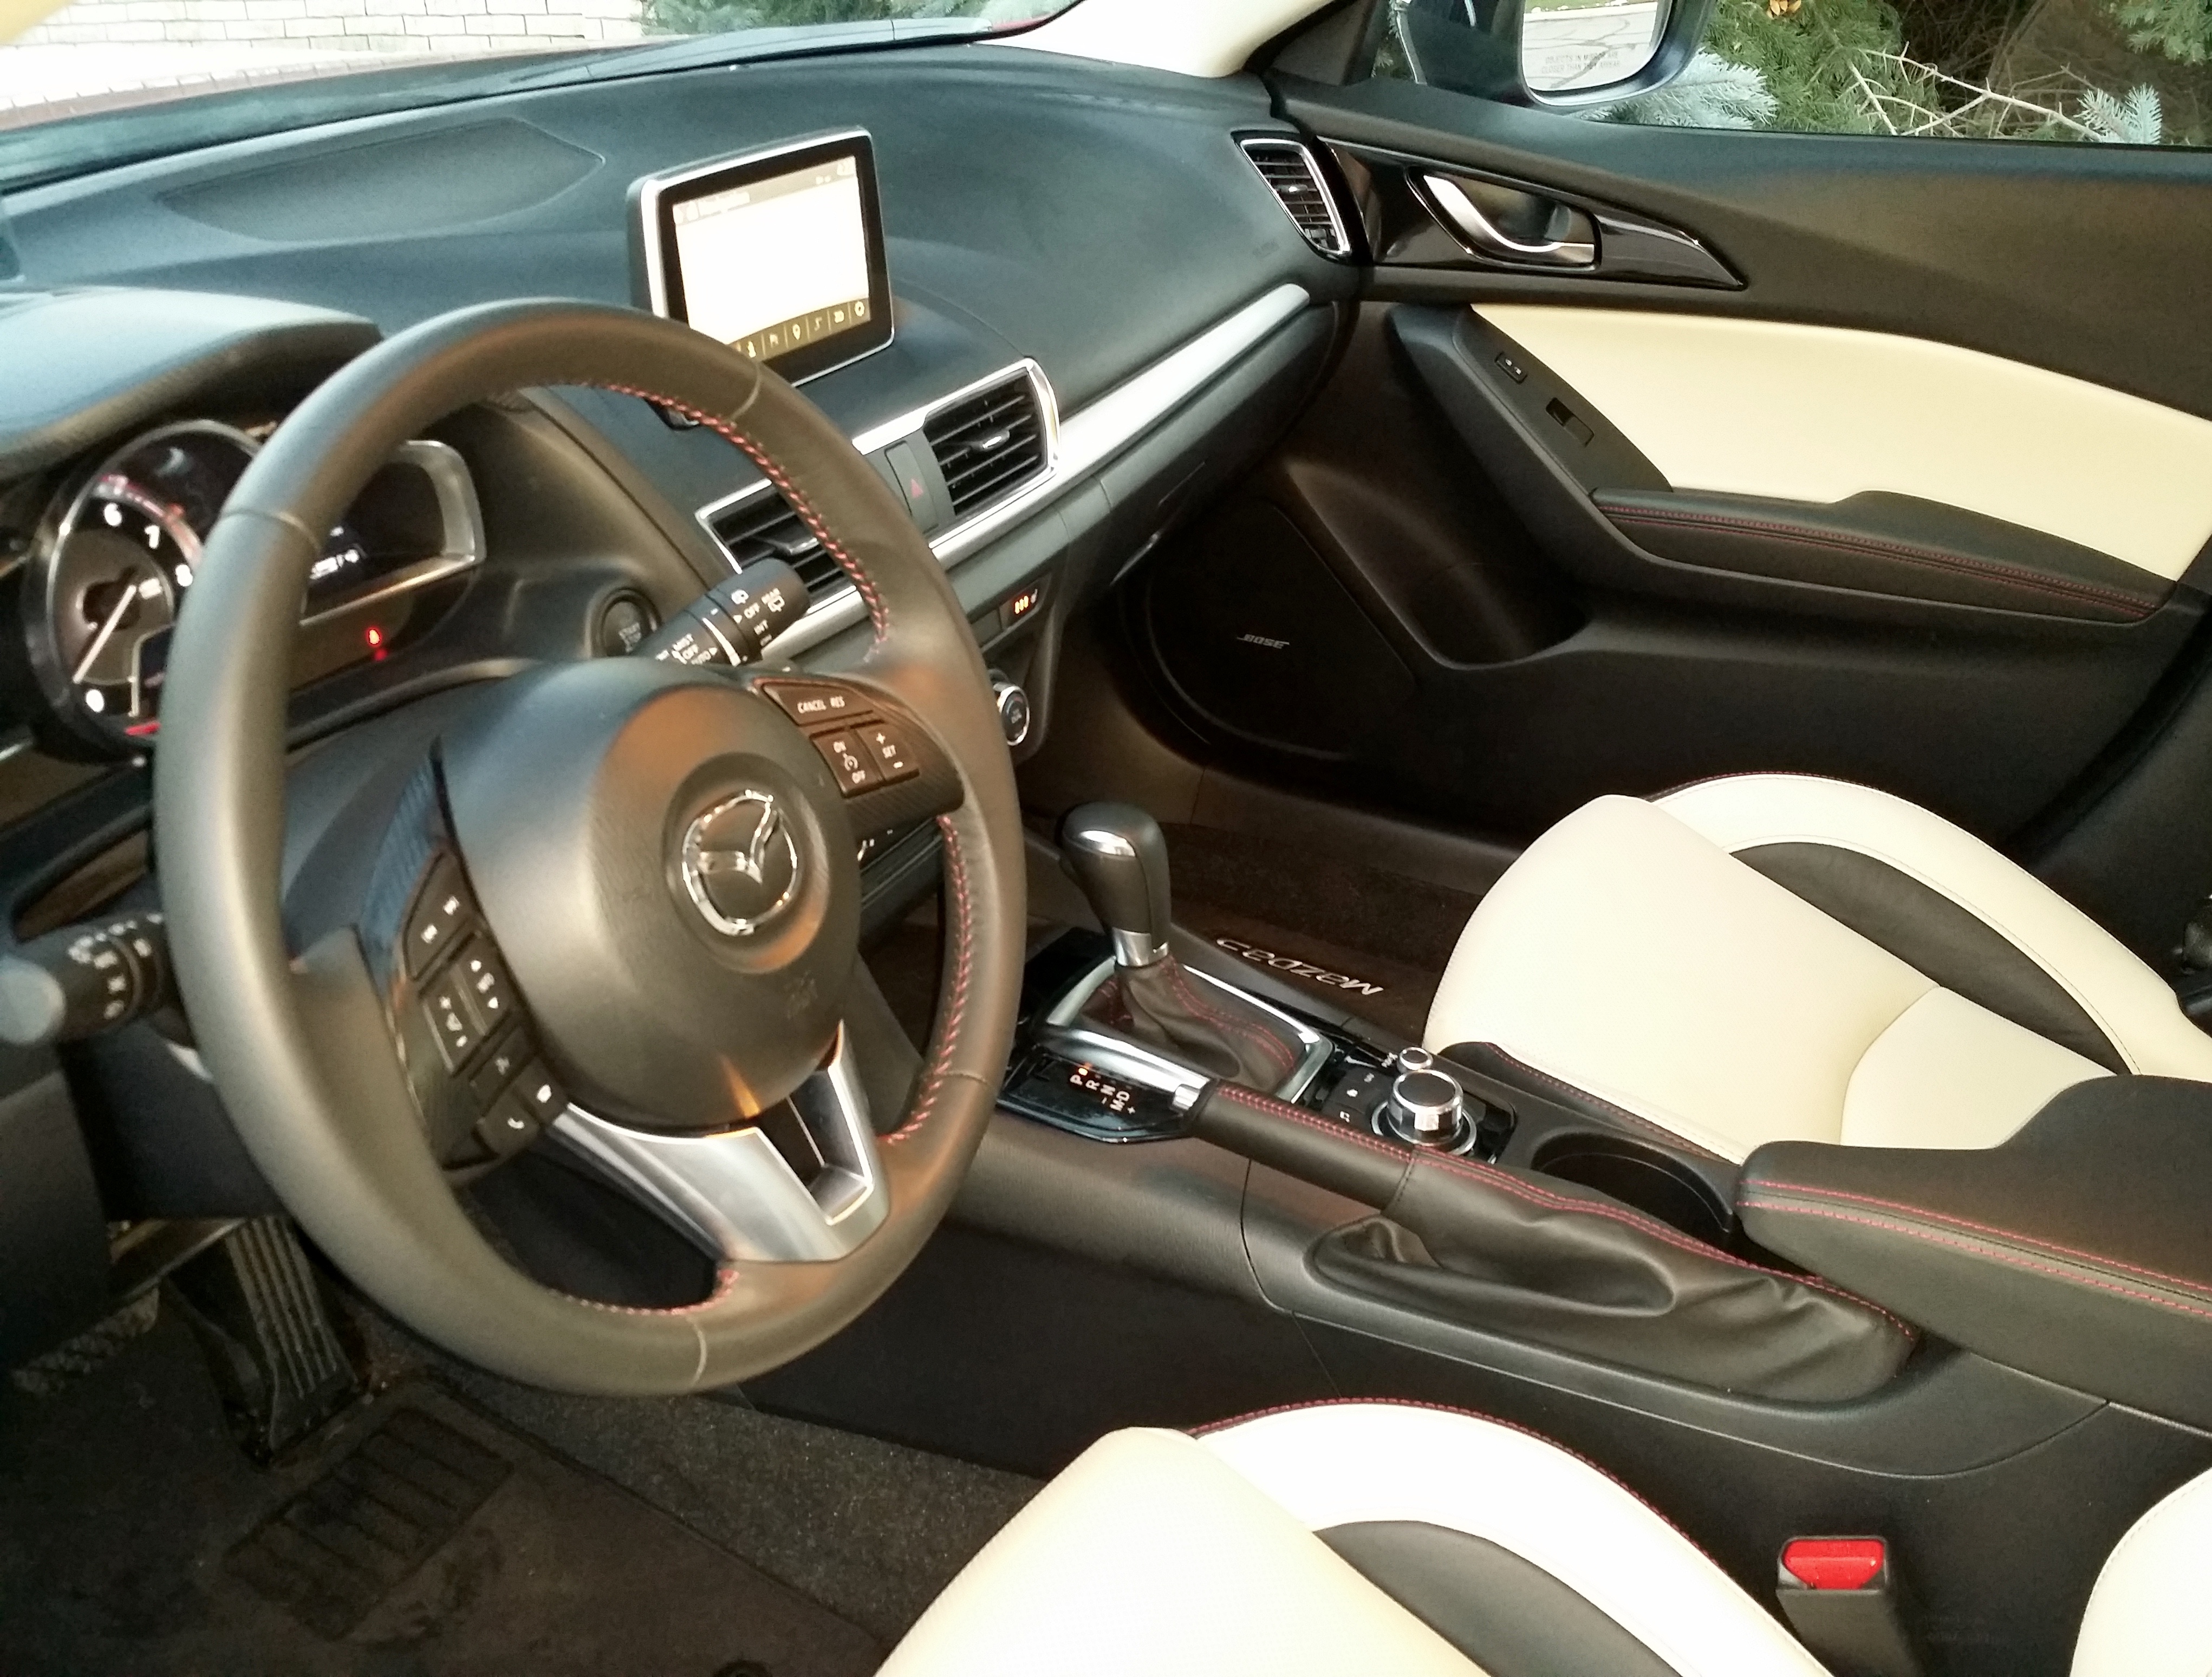 2016 Mazda3 S 5 Door Grand Touring Hatchback Stu S Reviews